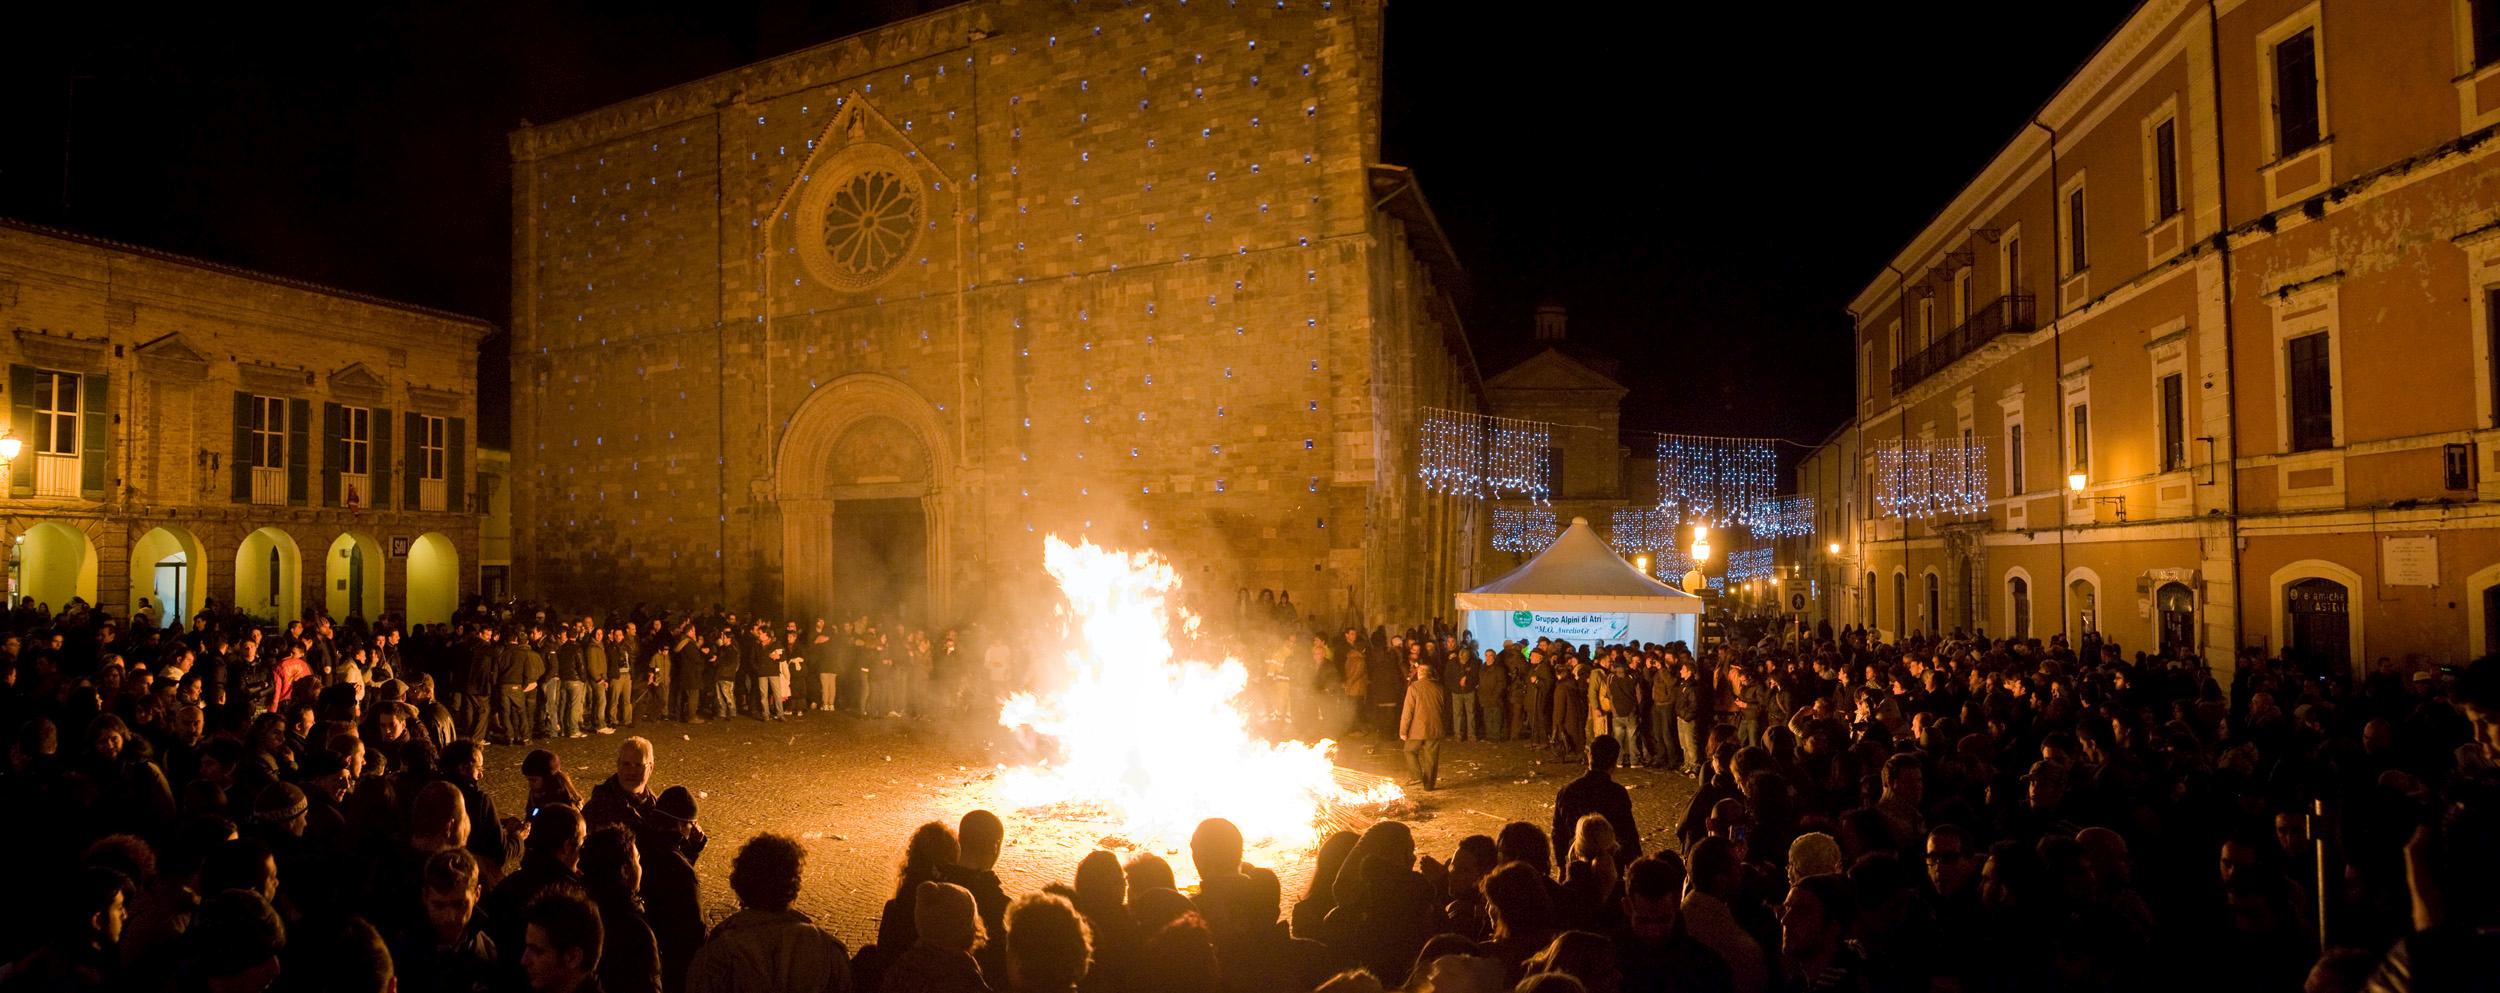 Roberto Monasterio, I faugni bruciano nel “sacro fuoco”, 2009, fotografia digitale